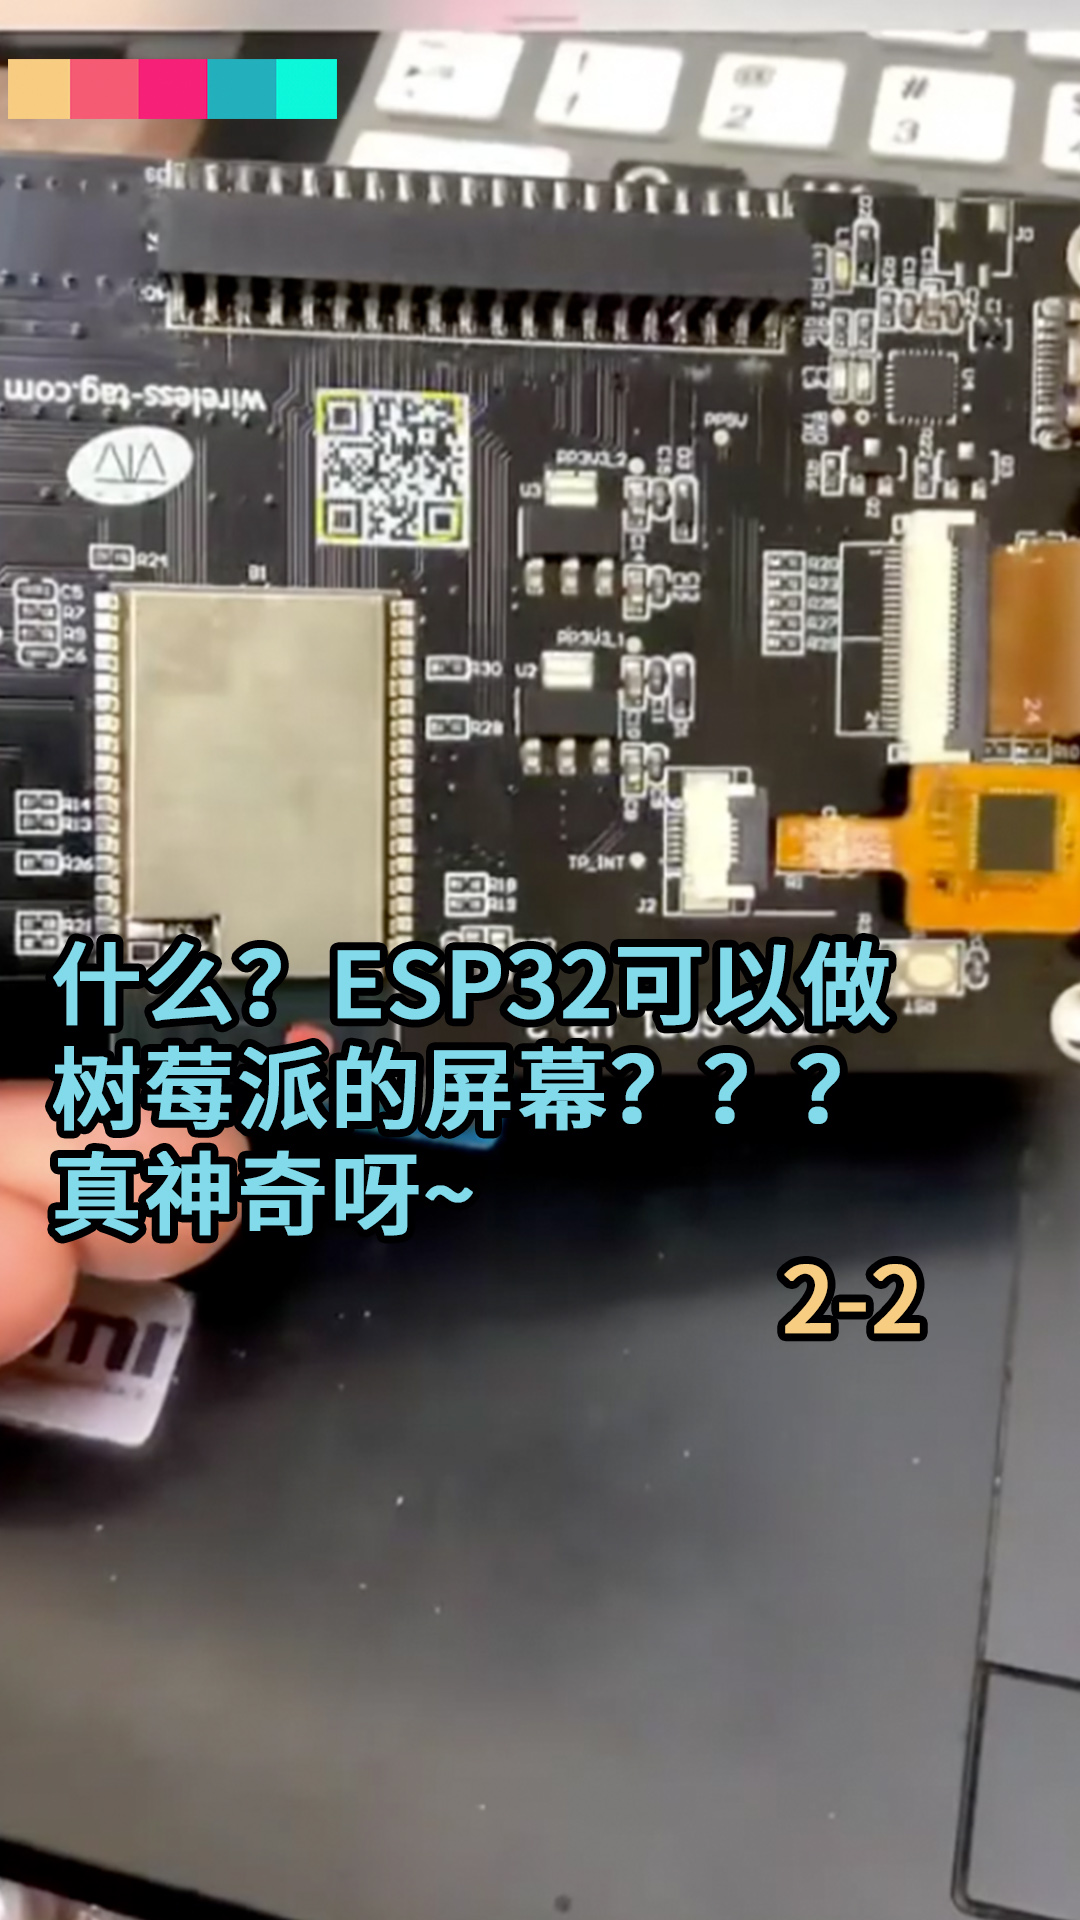 什么？ESP32可以做树莓派的屏幕？？？真神奇呀~2-2#ESP32 #树莓派开发 